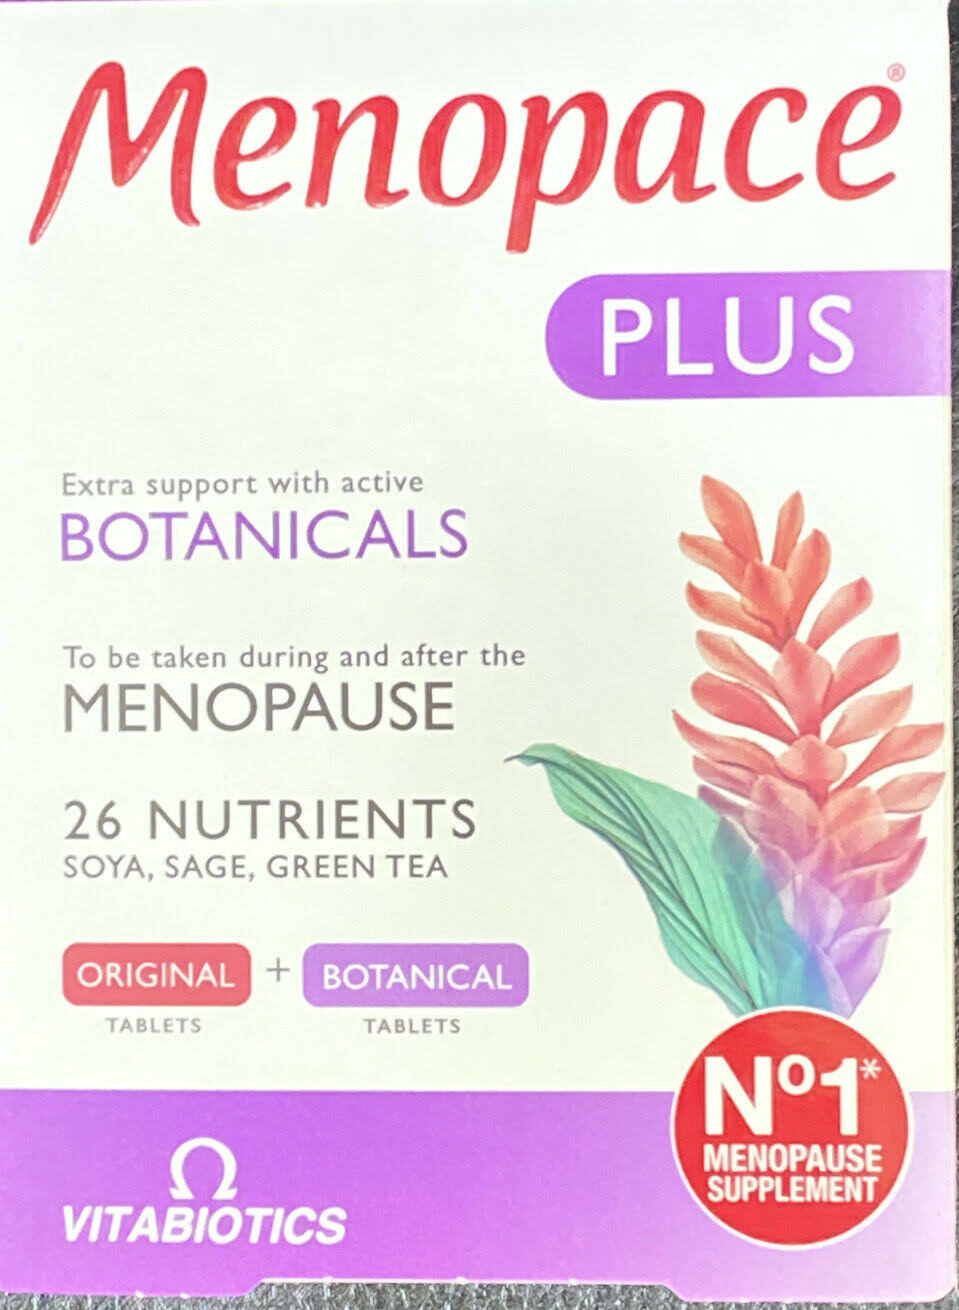 Vitabiotics Menopace Plus Botanicals Vitabiotics Supplement - 56ct